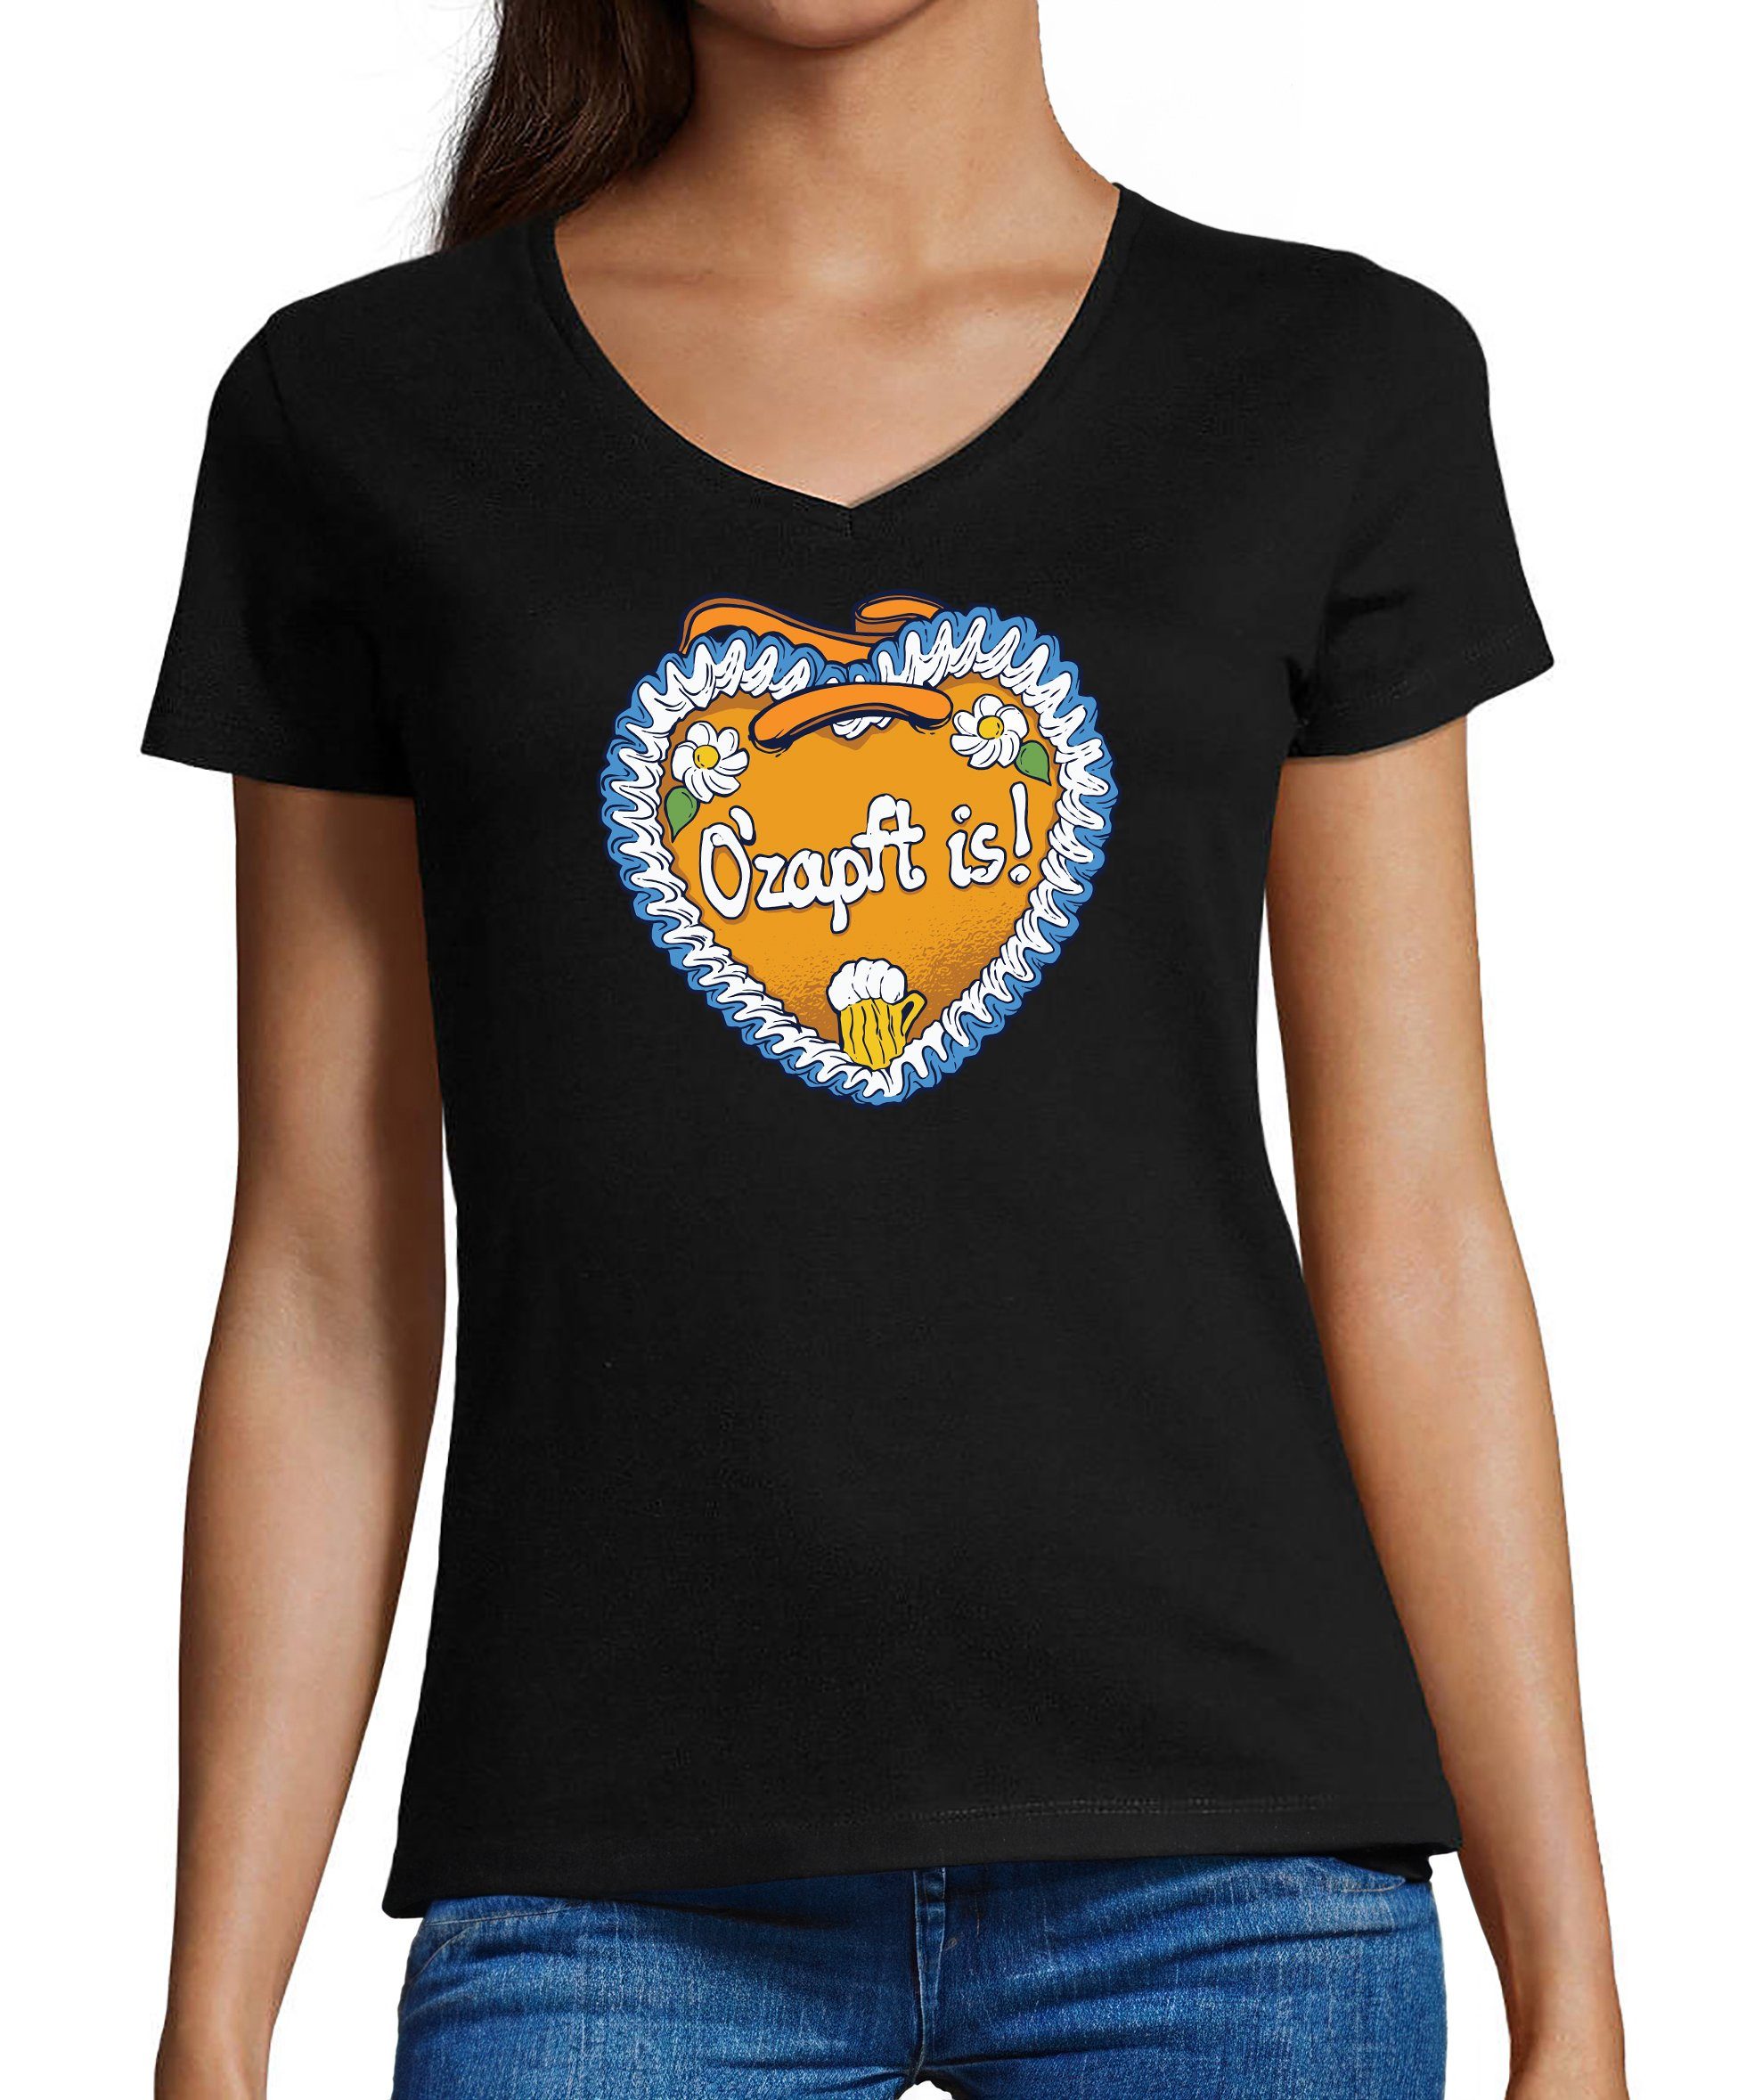 MyDesign24 T-Shirt Damen Oktoberfest T-Shirt - Lebkuchen Herz mit O´Zapft is V-Ausschnitt Print Shirt Slim Fit, i313 schwarz